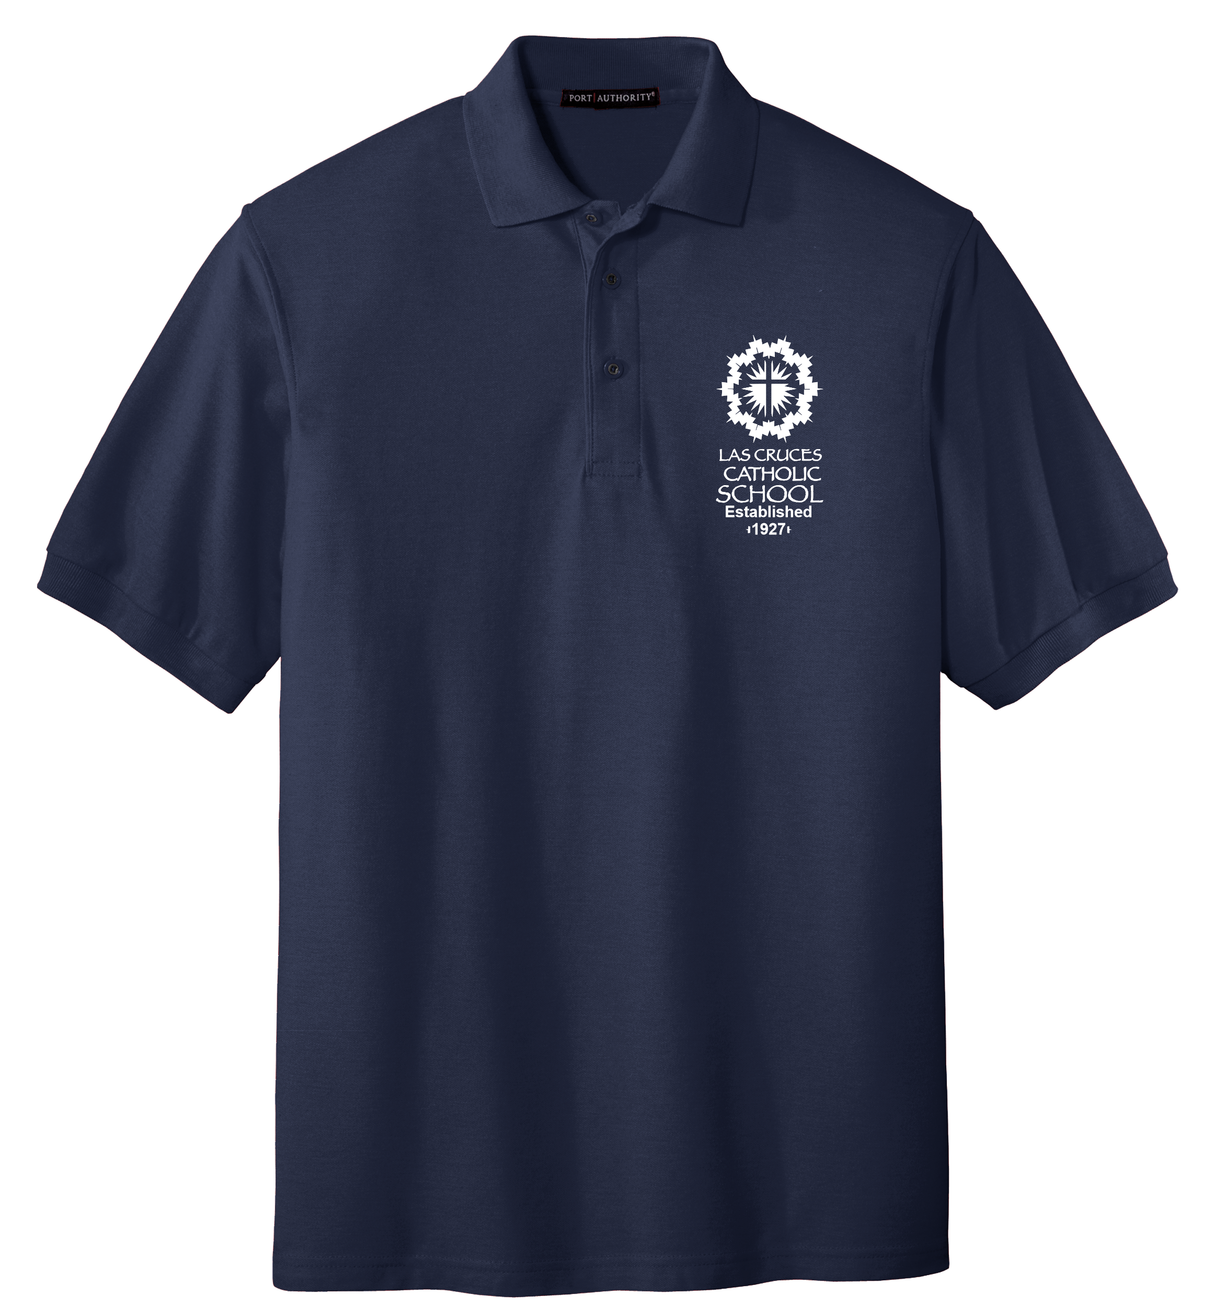 LCCS Middle School Adult Uniform Polo